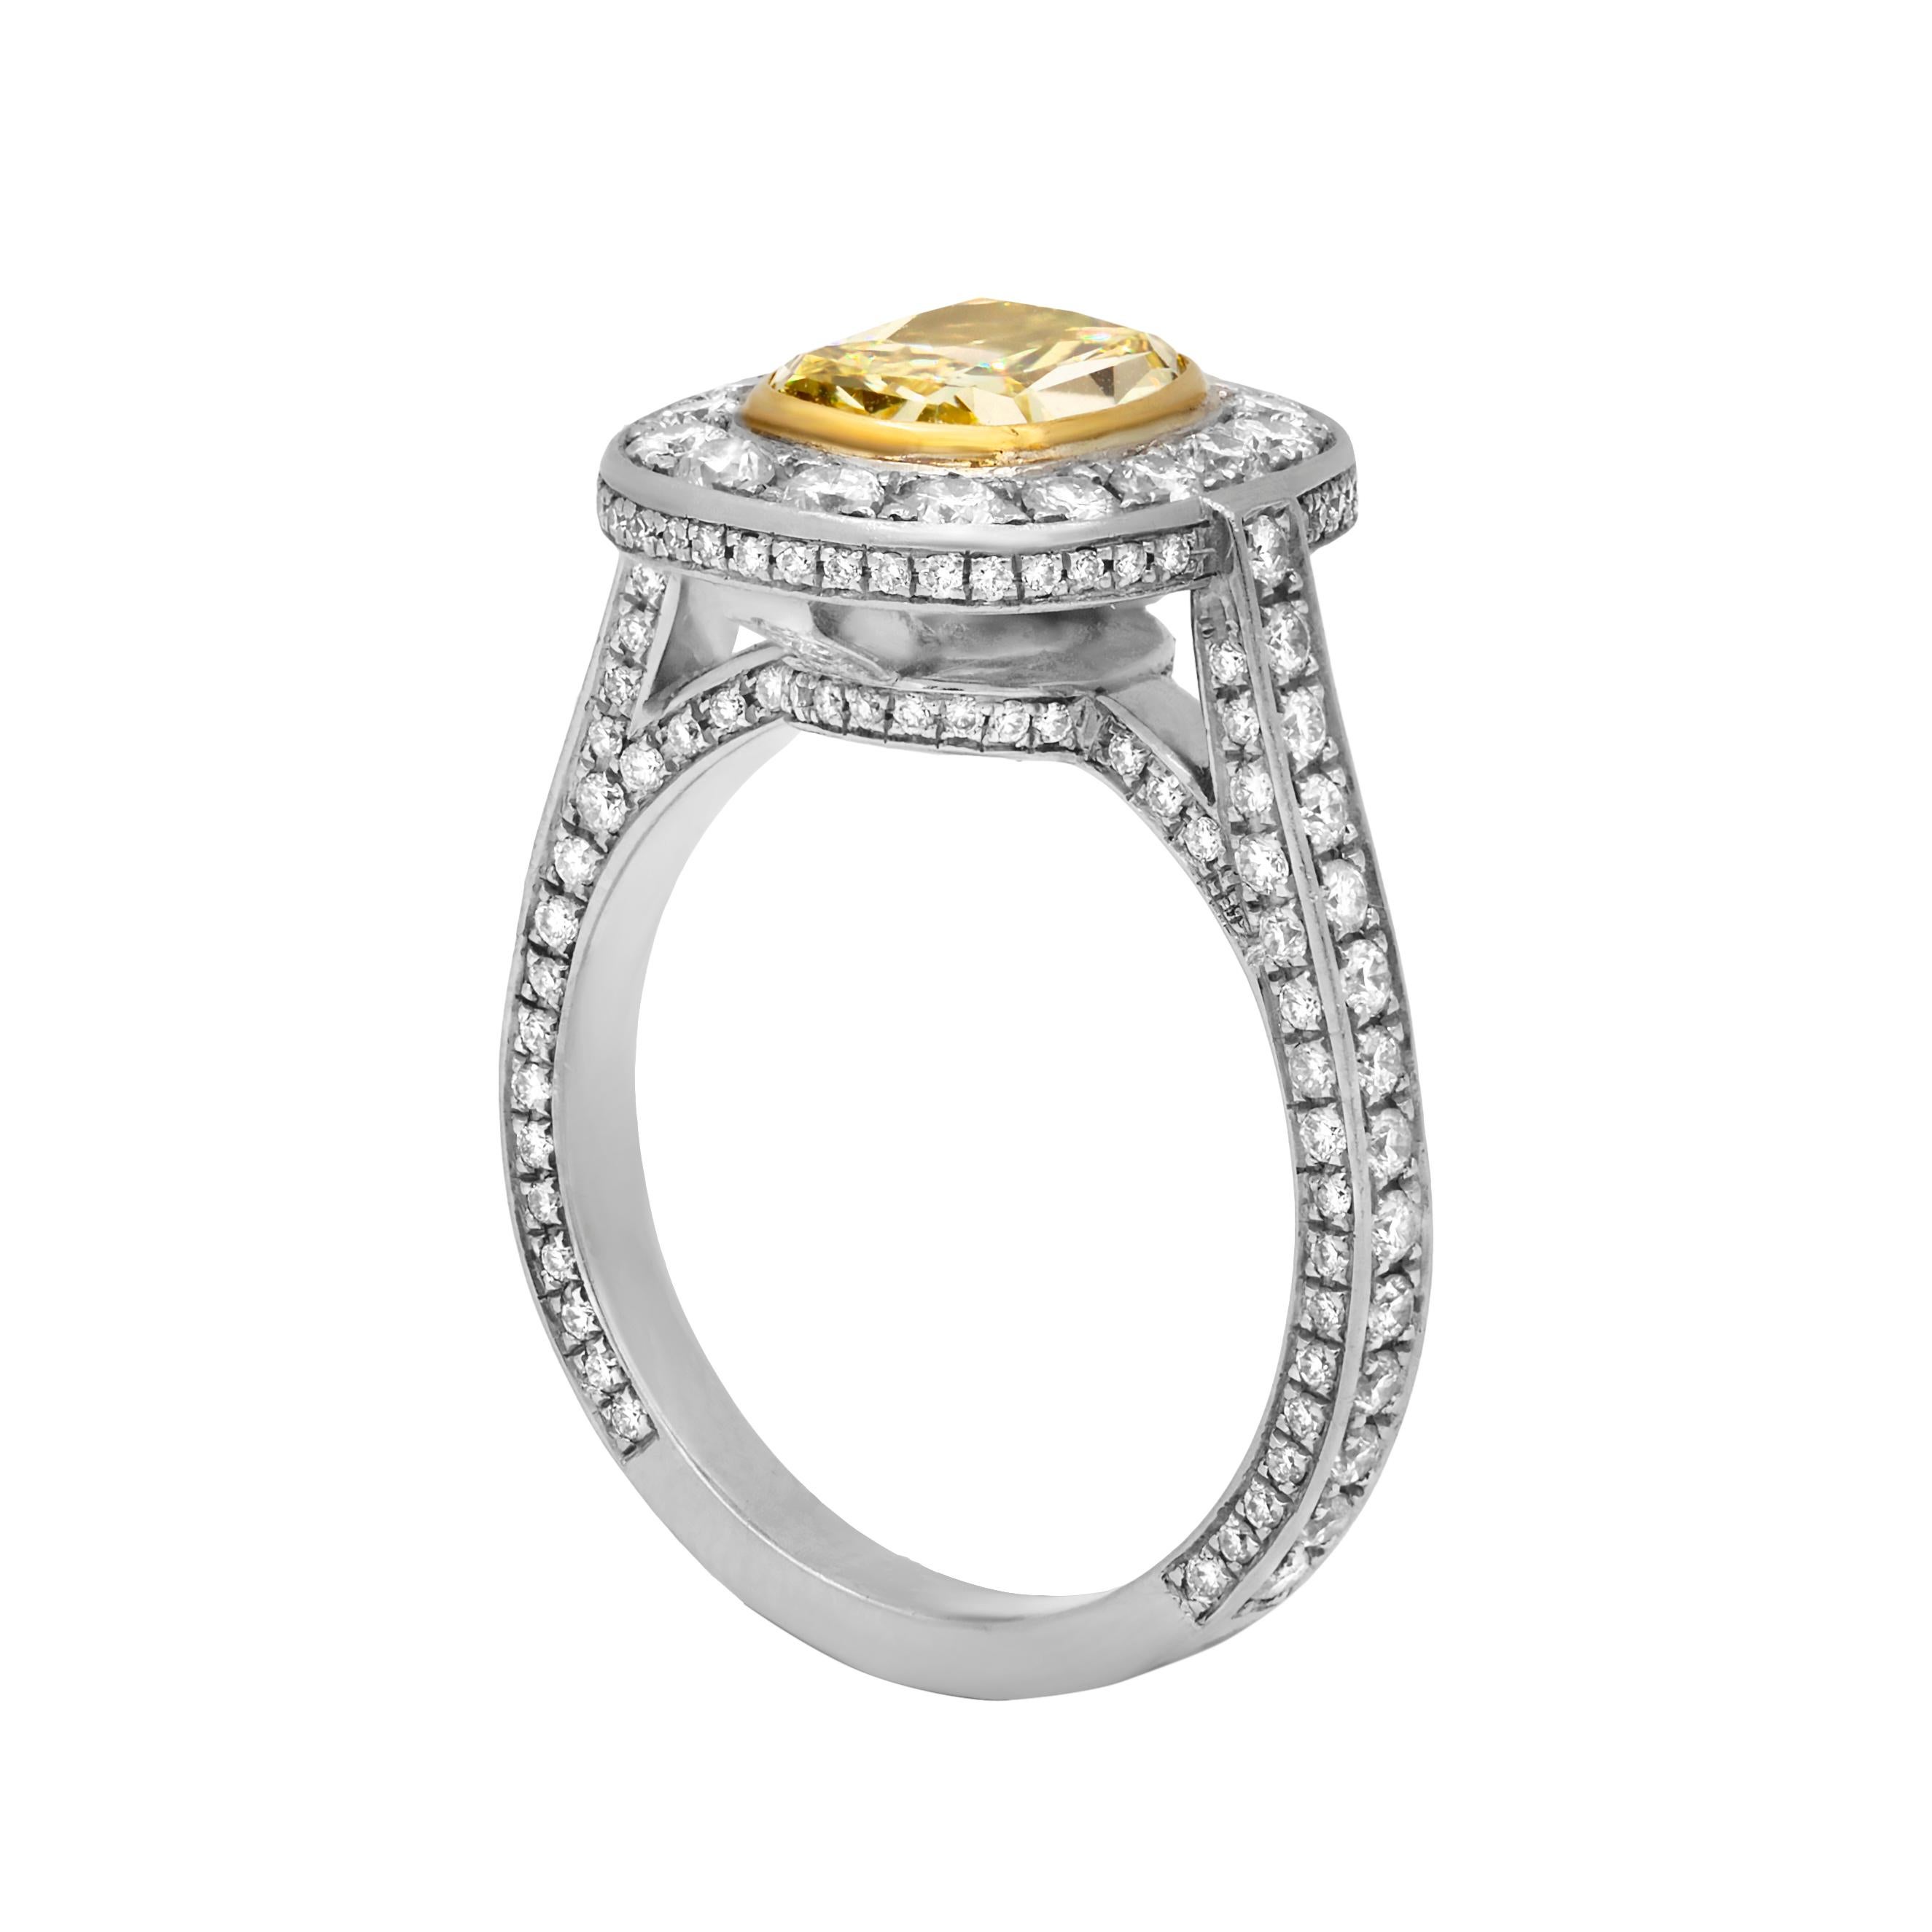 Verlobungsring aus Platin und 18 Karat Gelbgold mit 1,67 Karat intensivem gelben Diamanten mit Reinheit VS1 und 1,31 Karat weißen Diamanten, die den Ring und den Ringring umgeben. GIA zertifiziert 
Fingergröße 6 